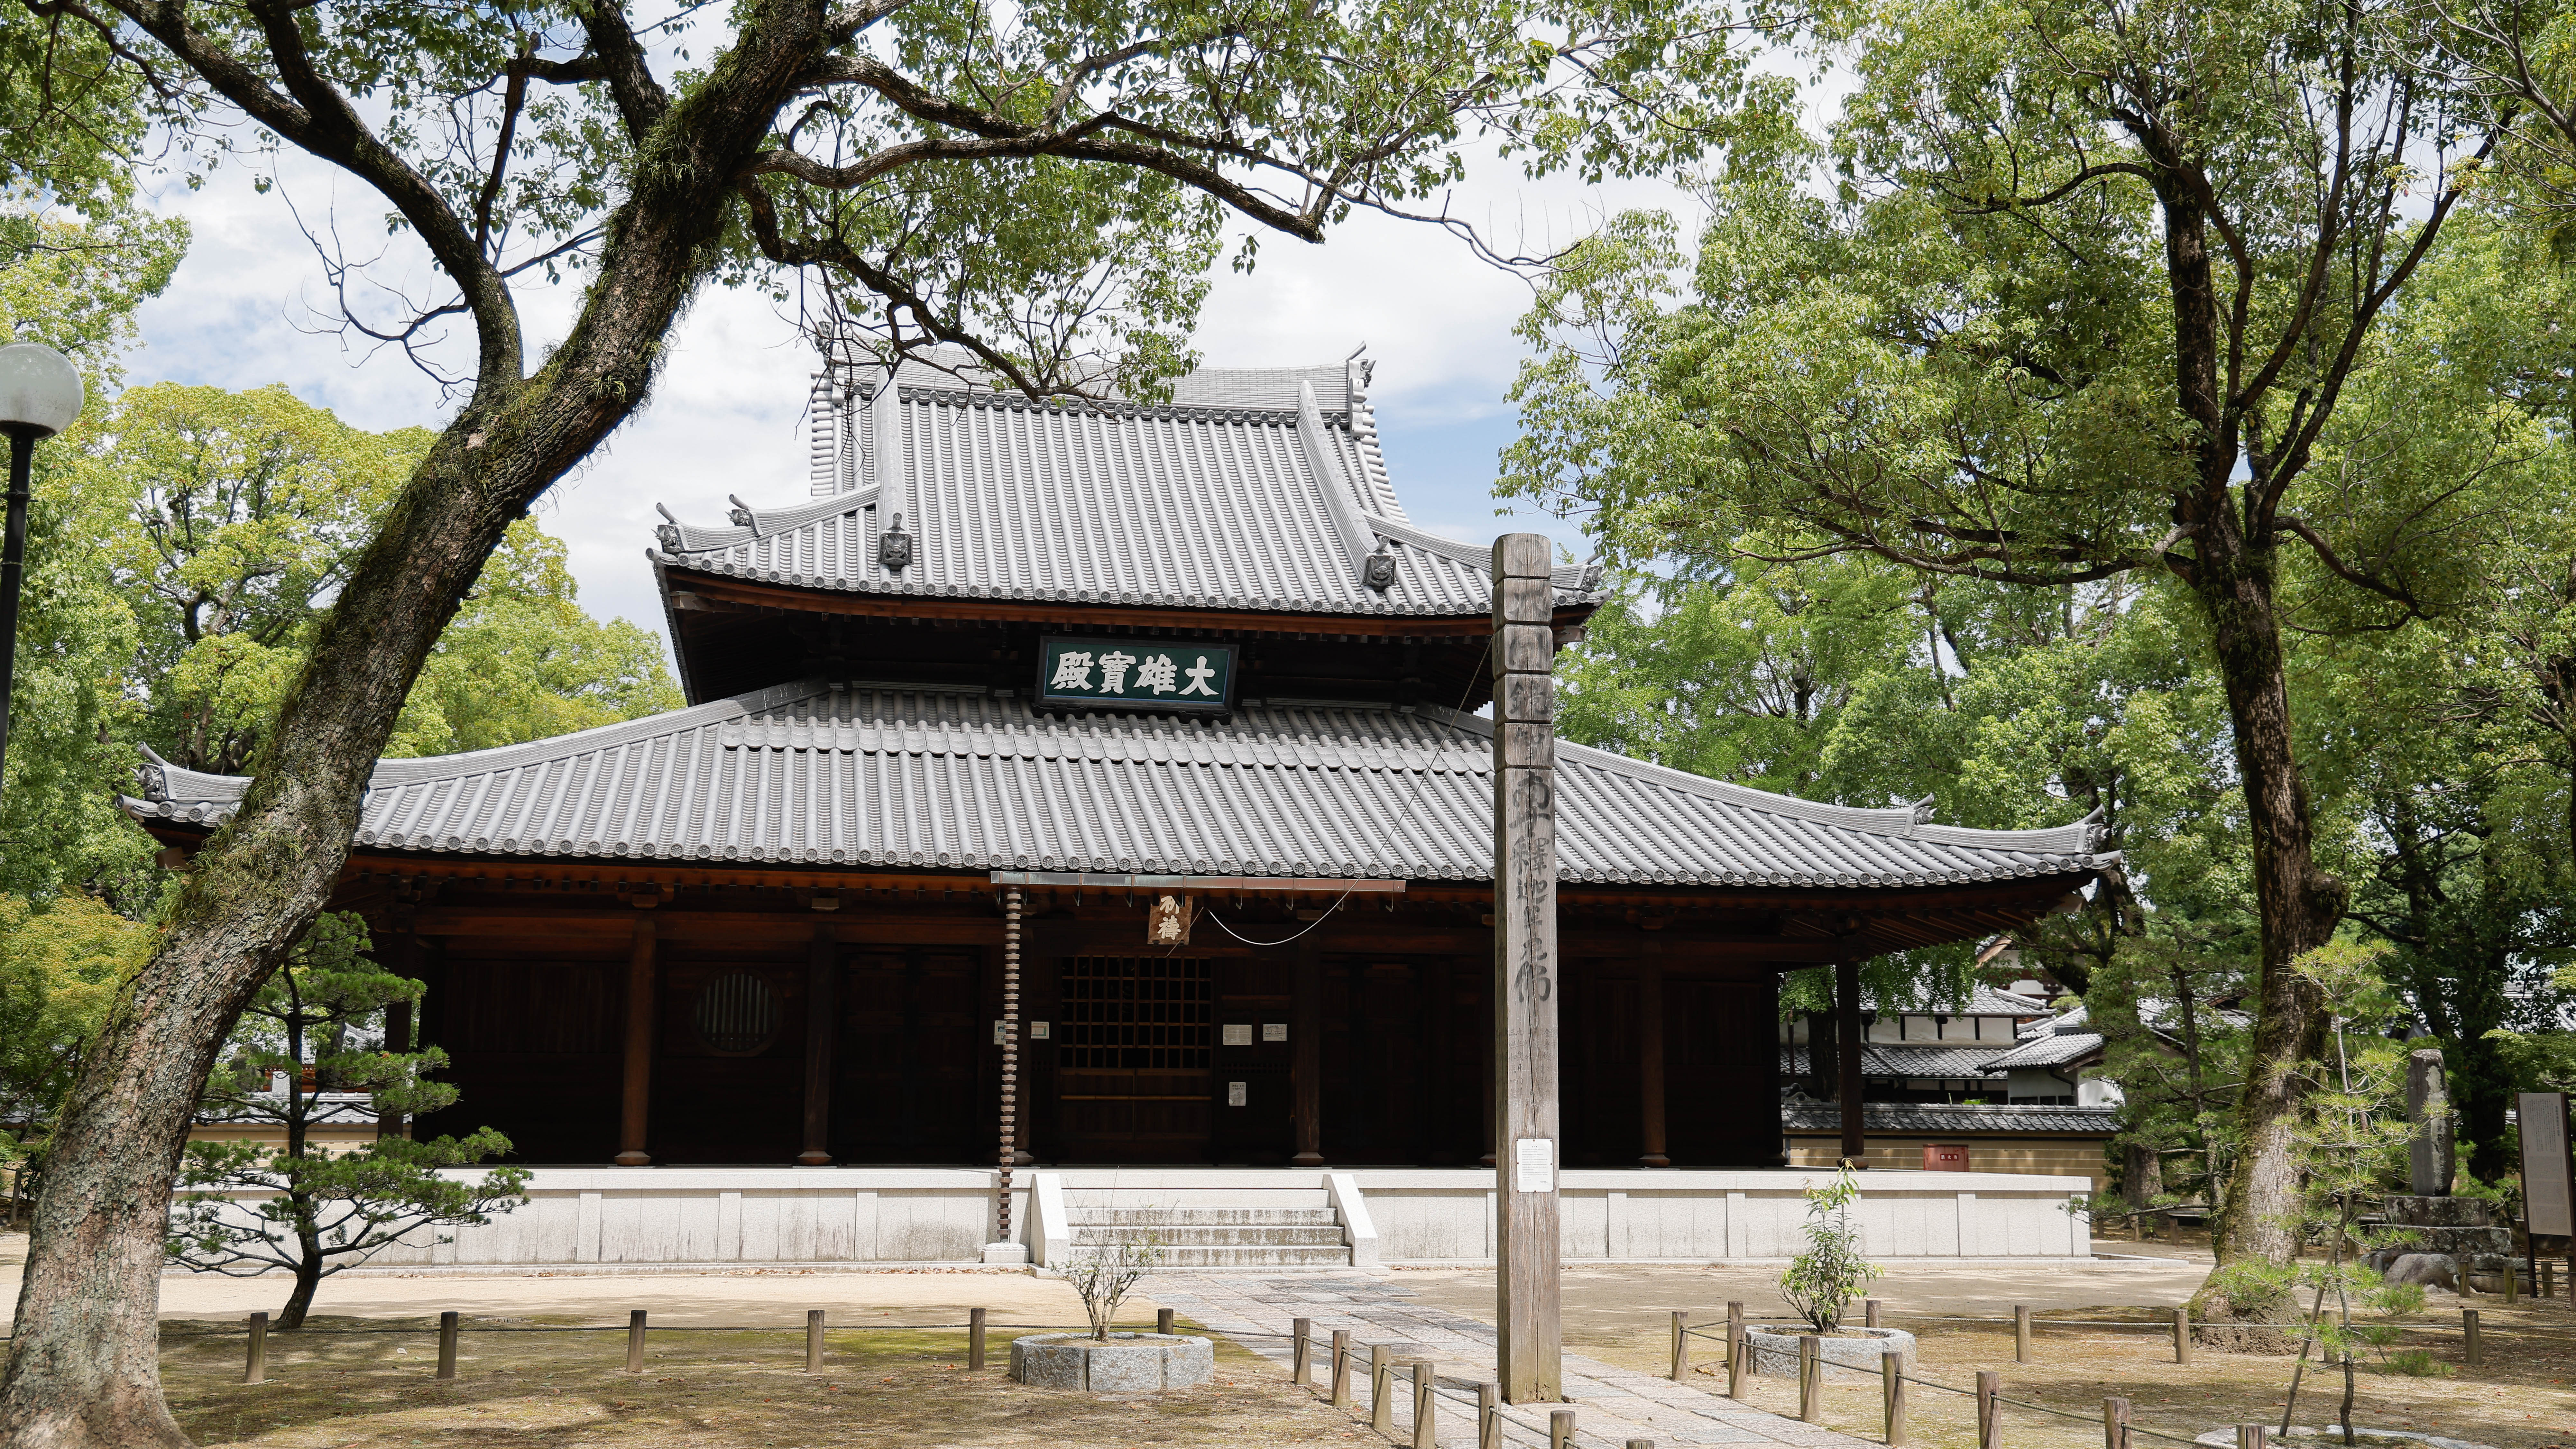 聖福寺：博多区にある栄西禅師を開山として創建された日本最初の禅寺